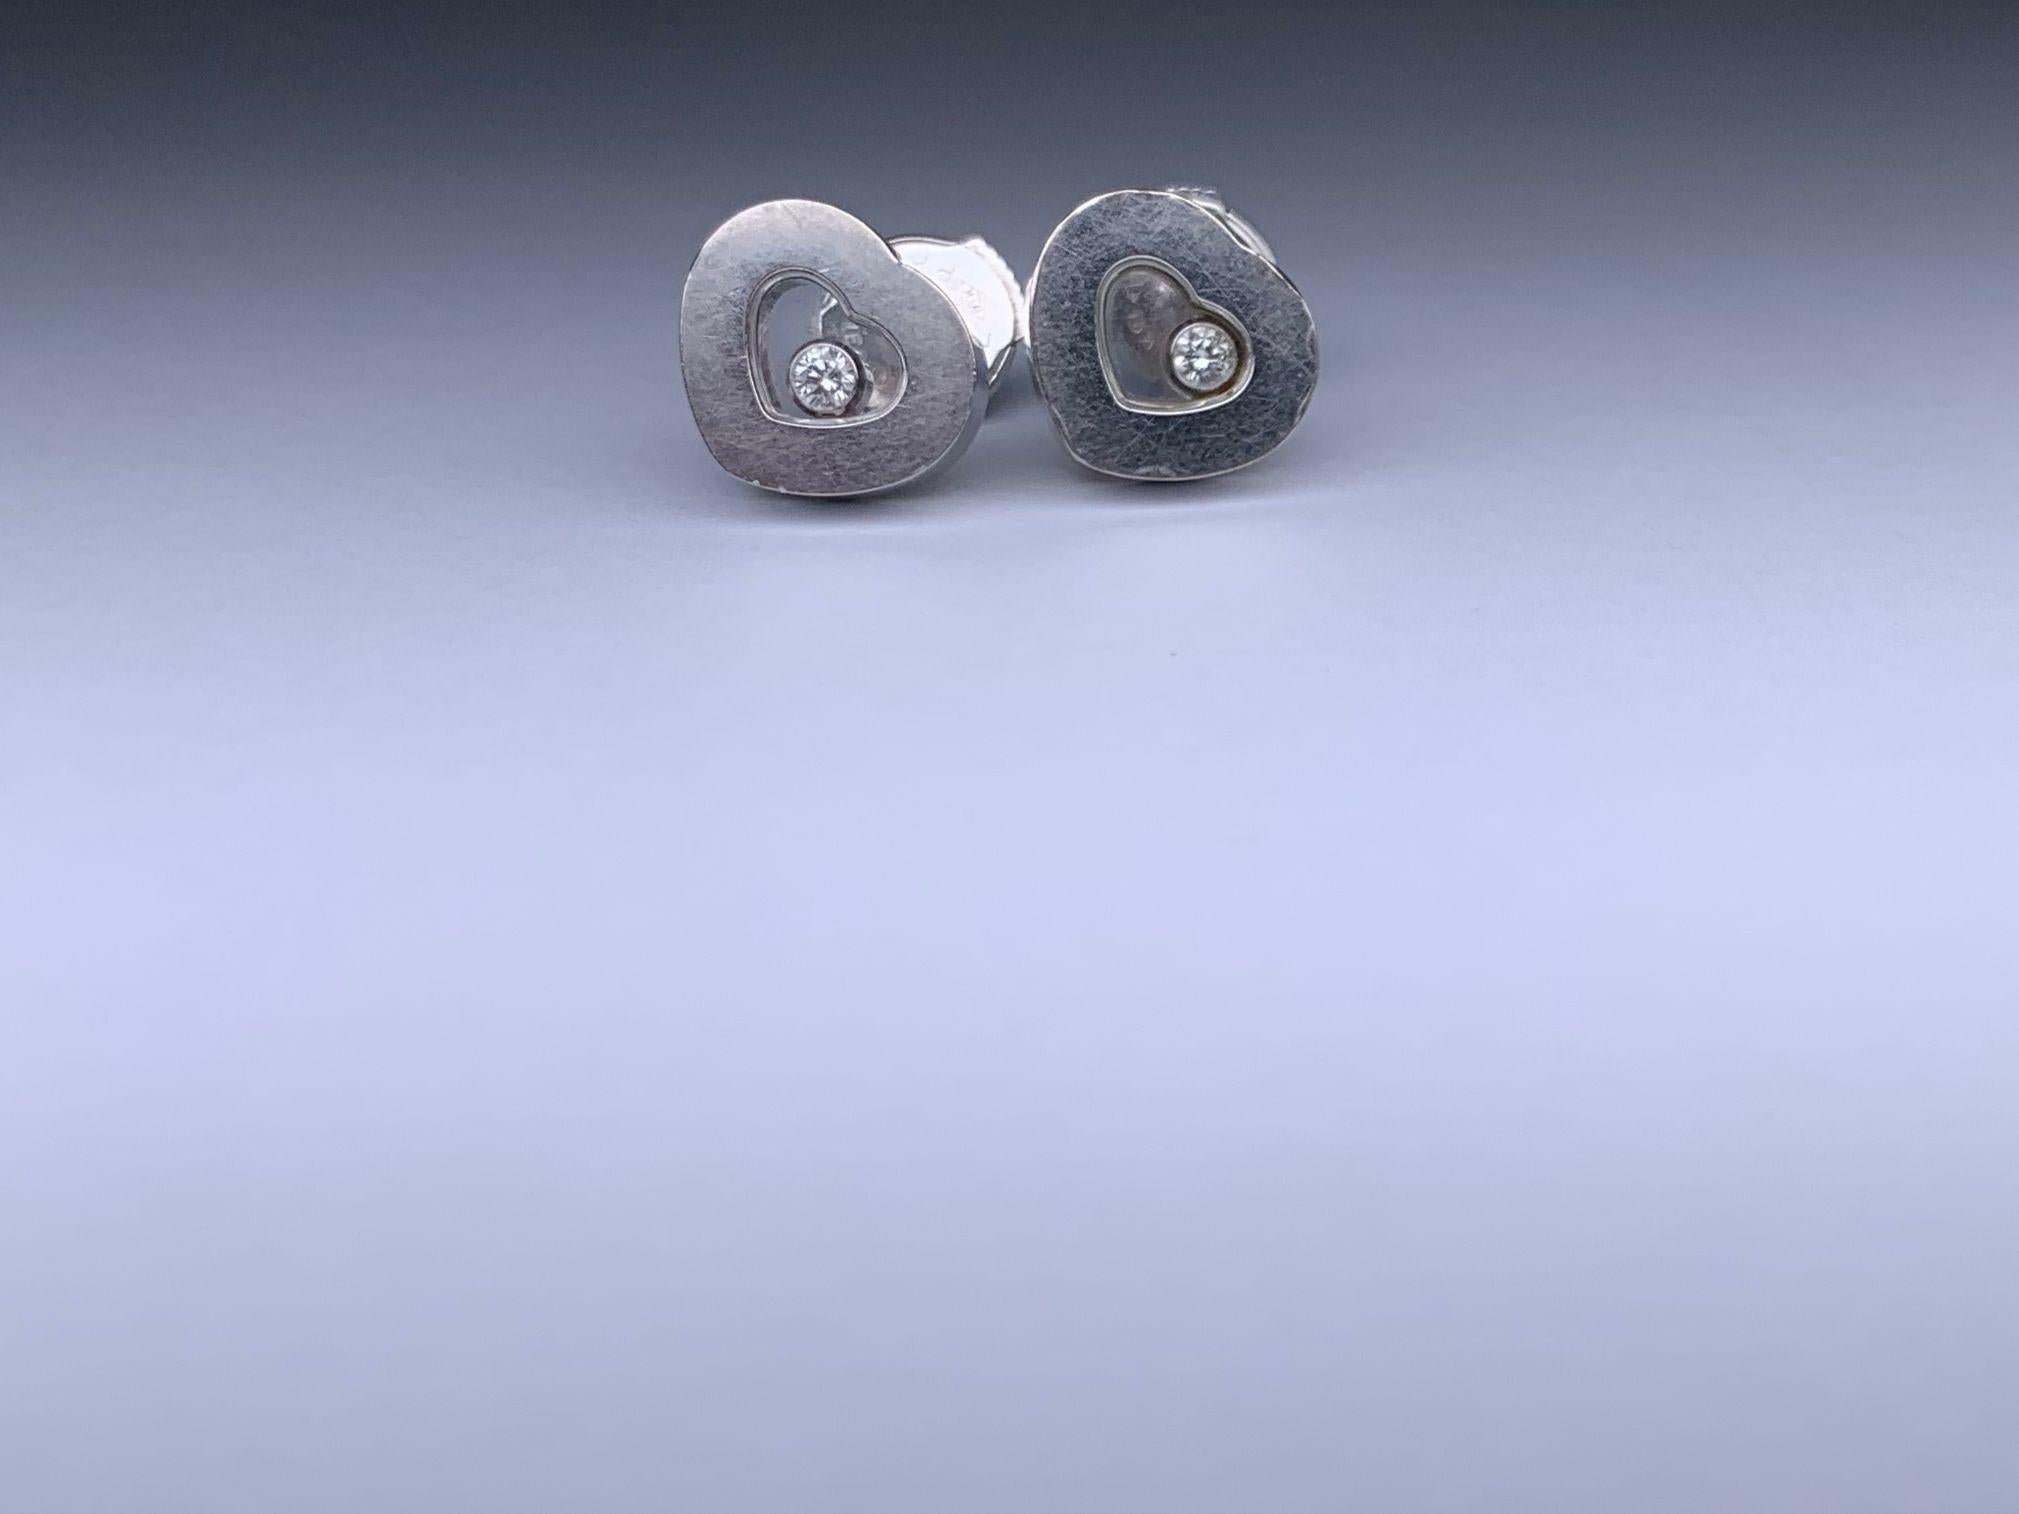 Marque : Chopard
Description : Boucles d'oreilles Happy Diamond de Chopard - 8,2 g
Type de métal : 750WG/Or blanc
Poids 8.2g
Condit : Anciennement utilisé ; petits signes d'usure
Boîte -  Non inclus
Papiers - Inclus
